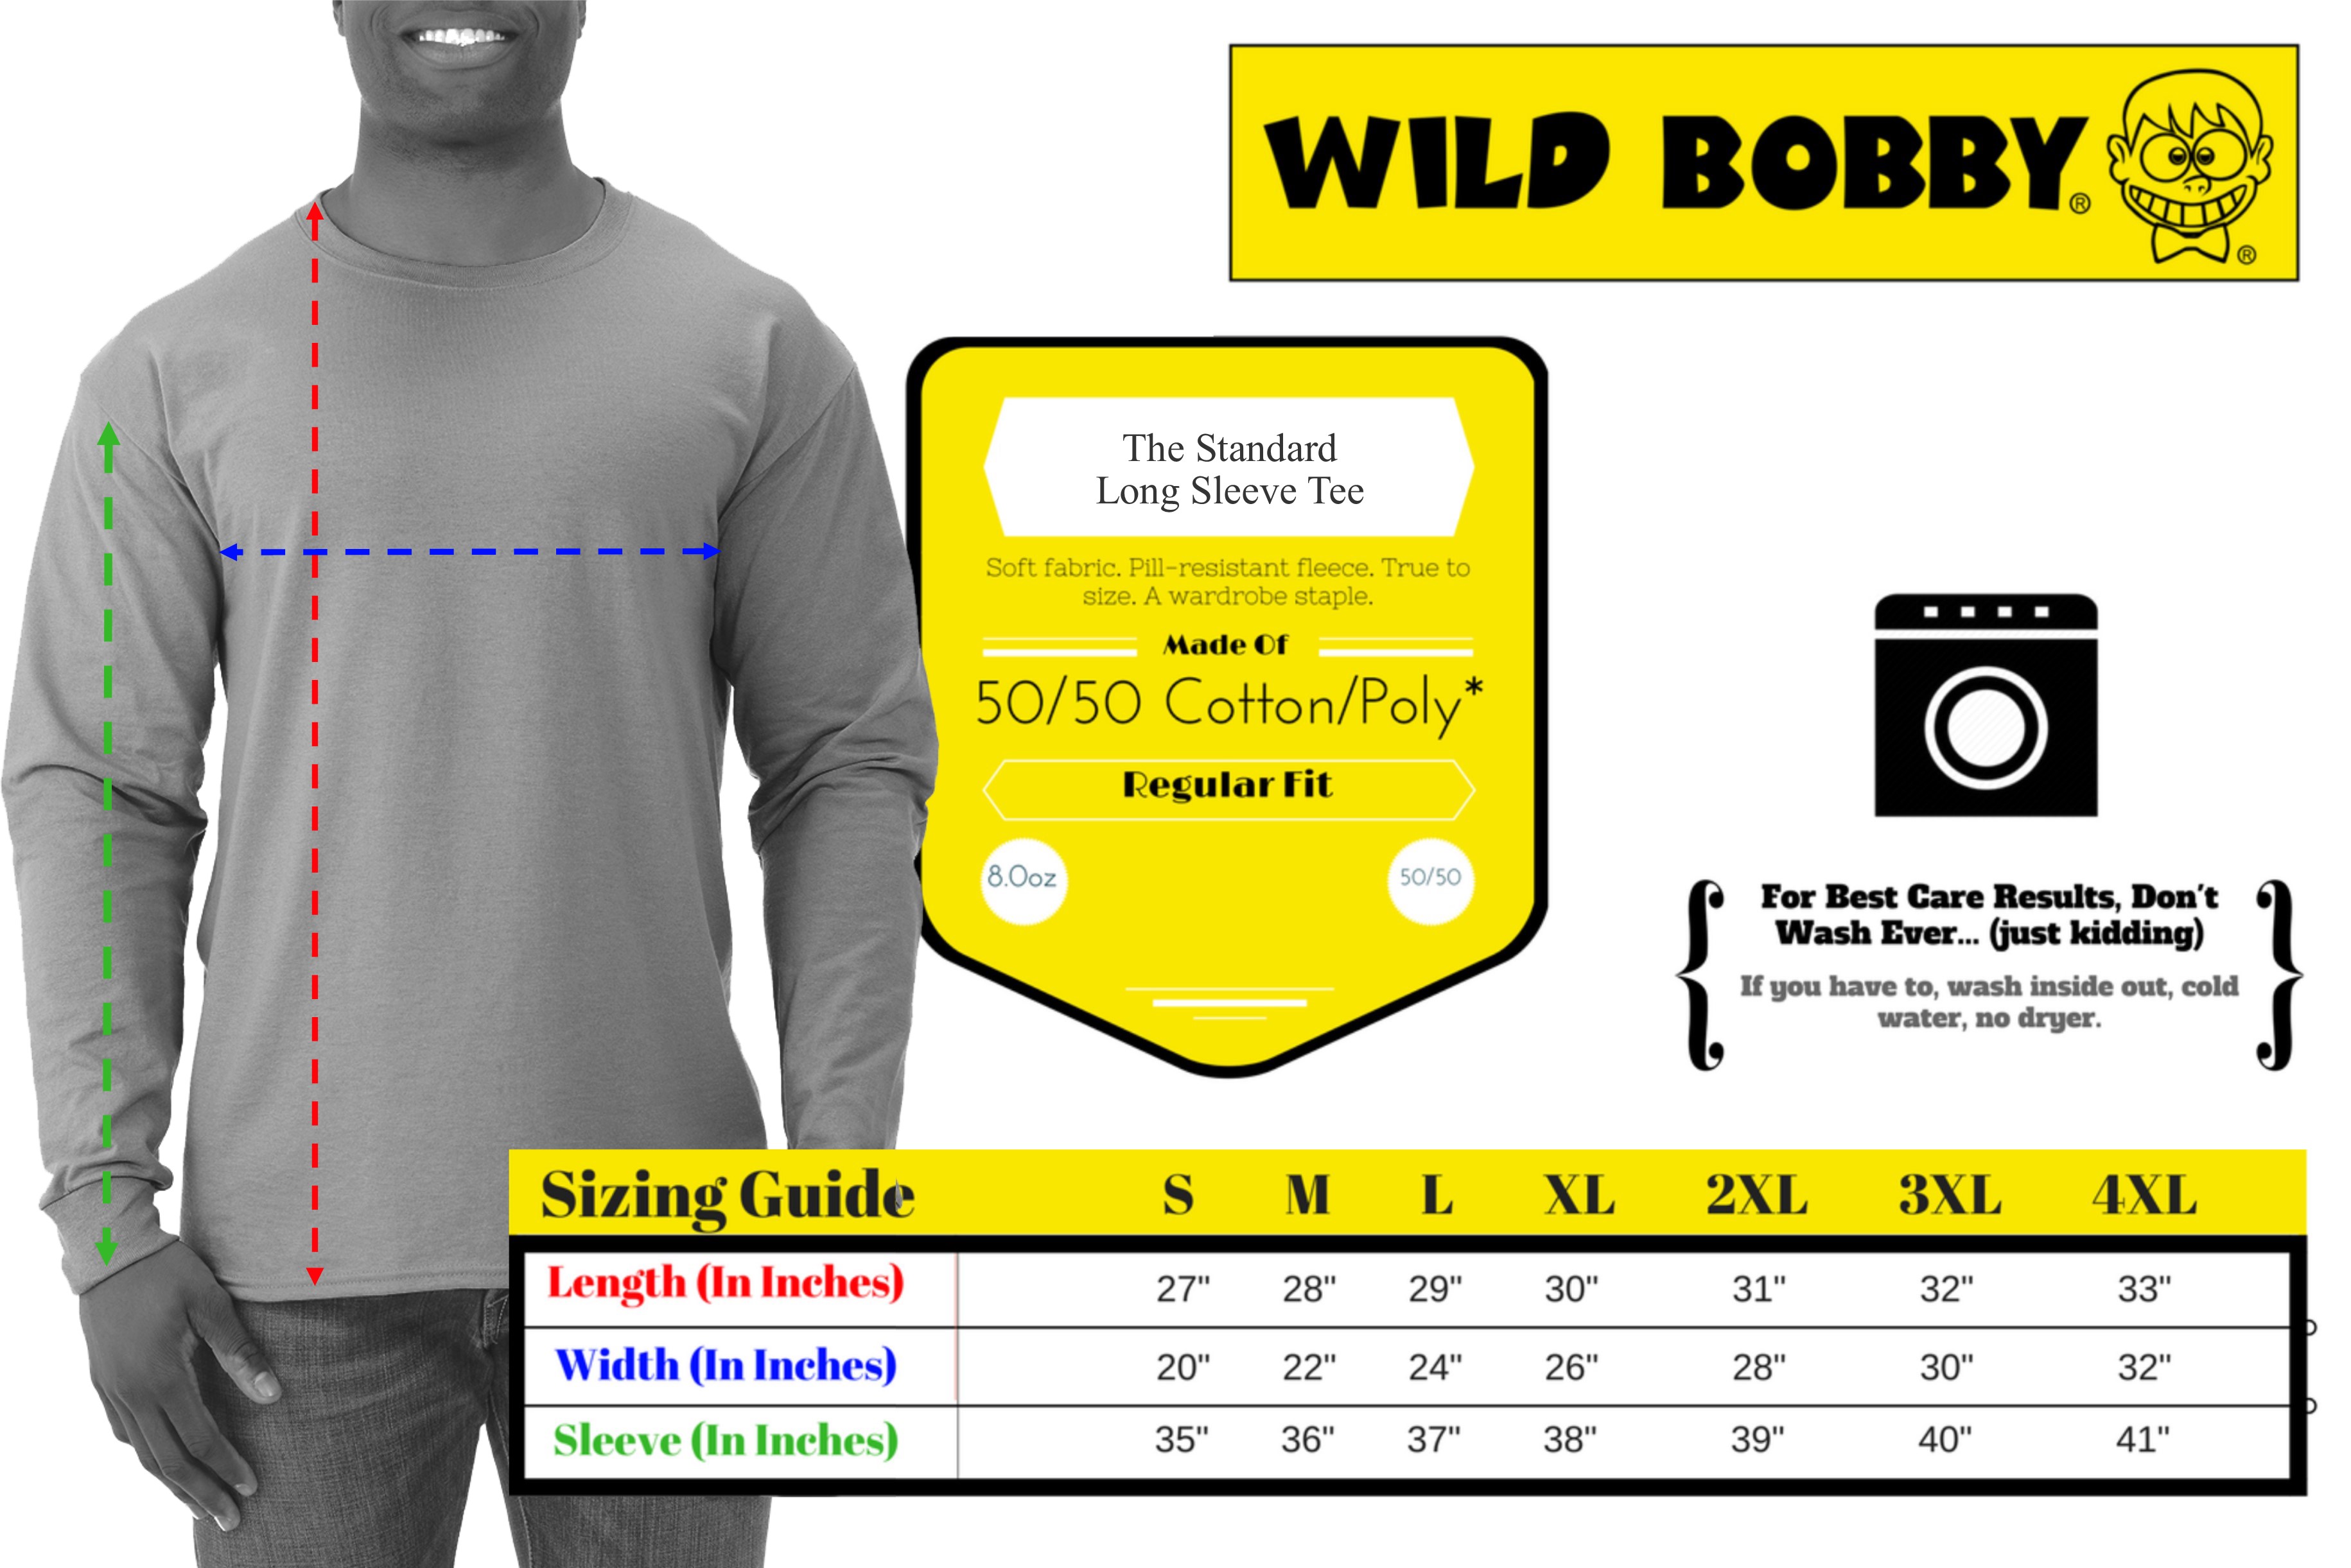 Wild Bobby, Colorful Floral Sugar Skull Streetwear Mens Long Sleeve Shirt, Royal, Small - image 3 of 3